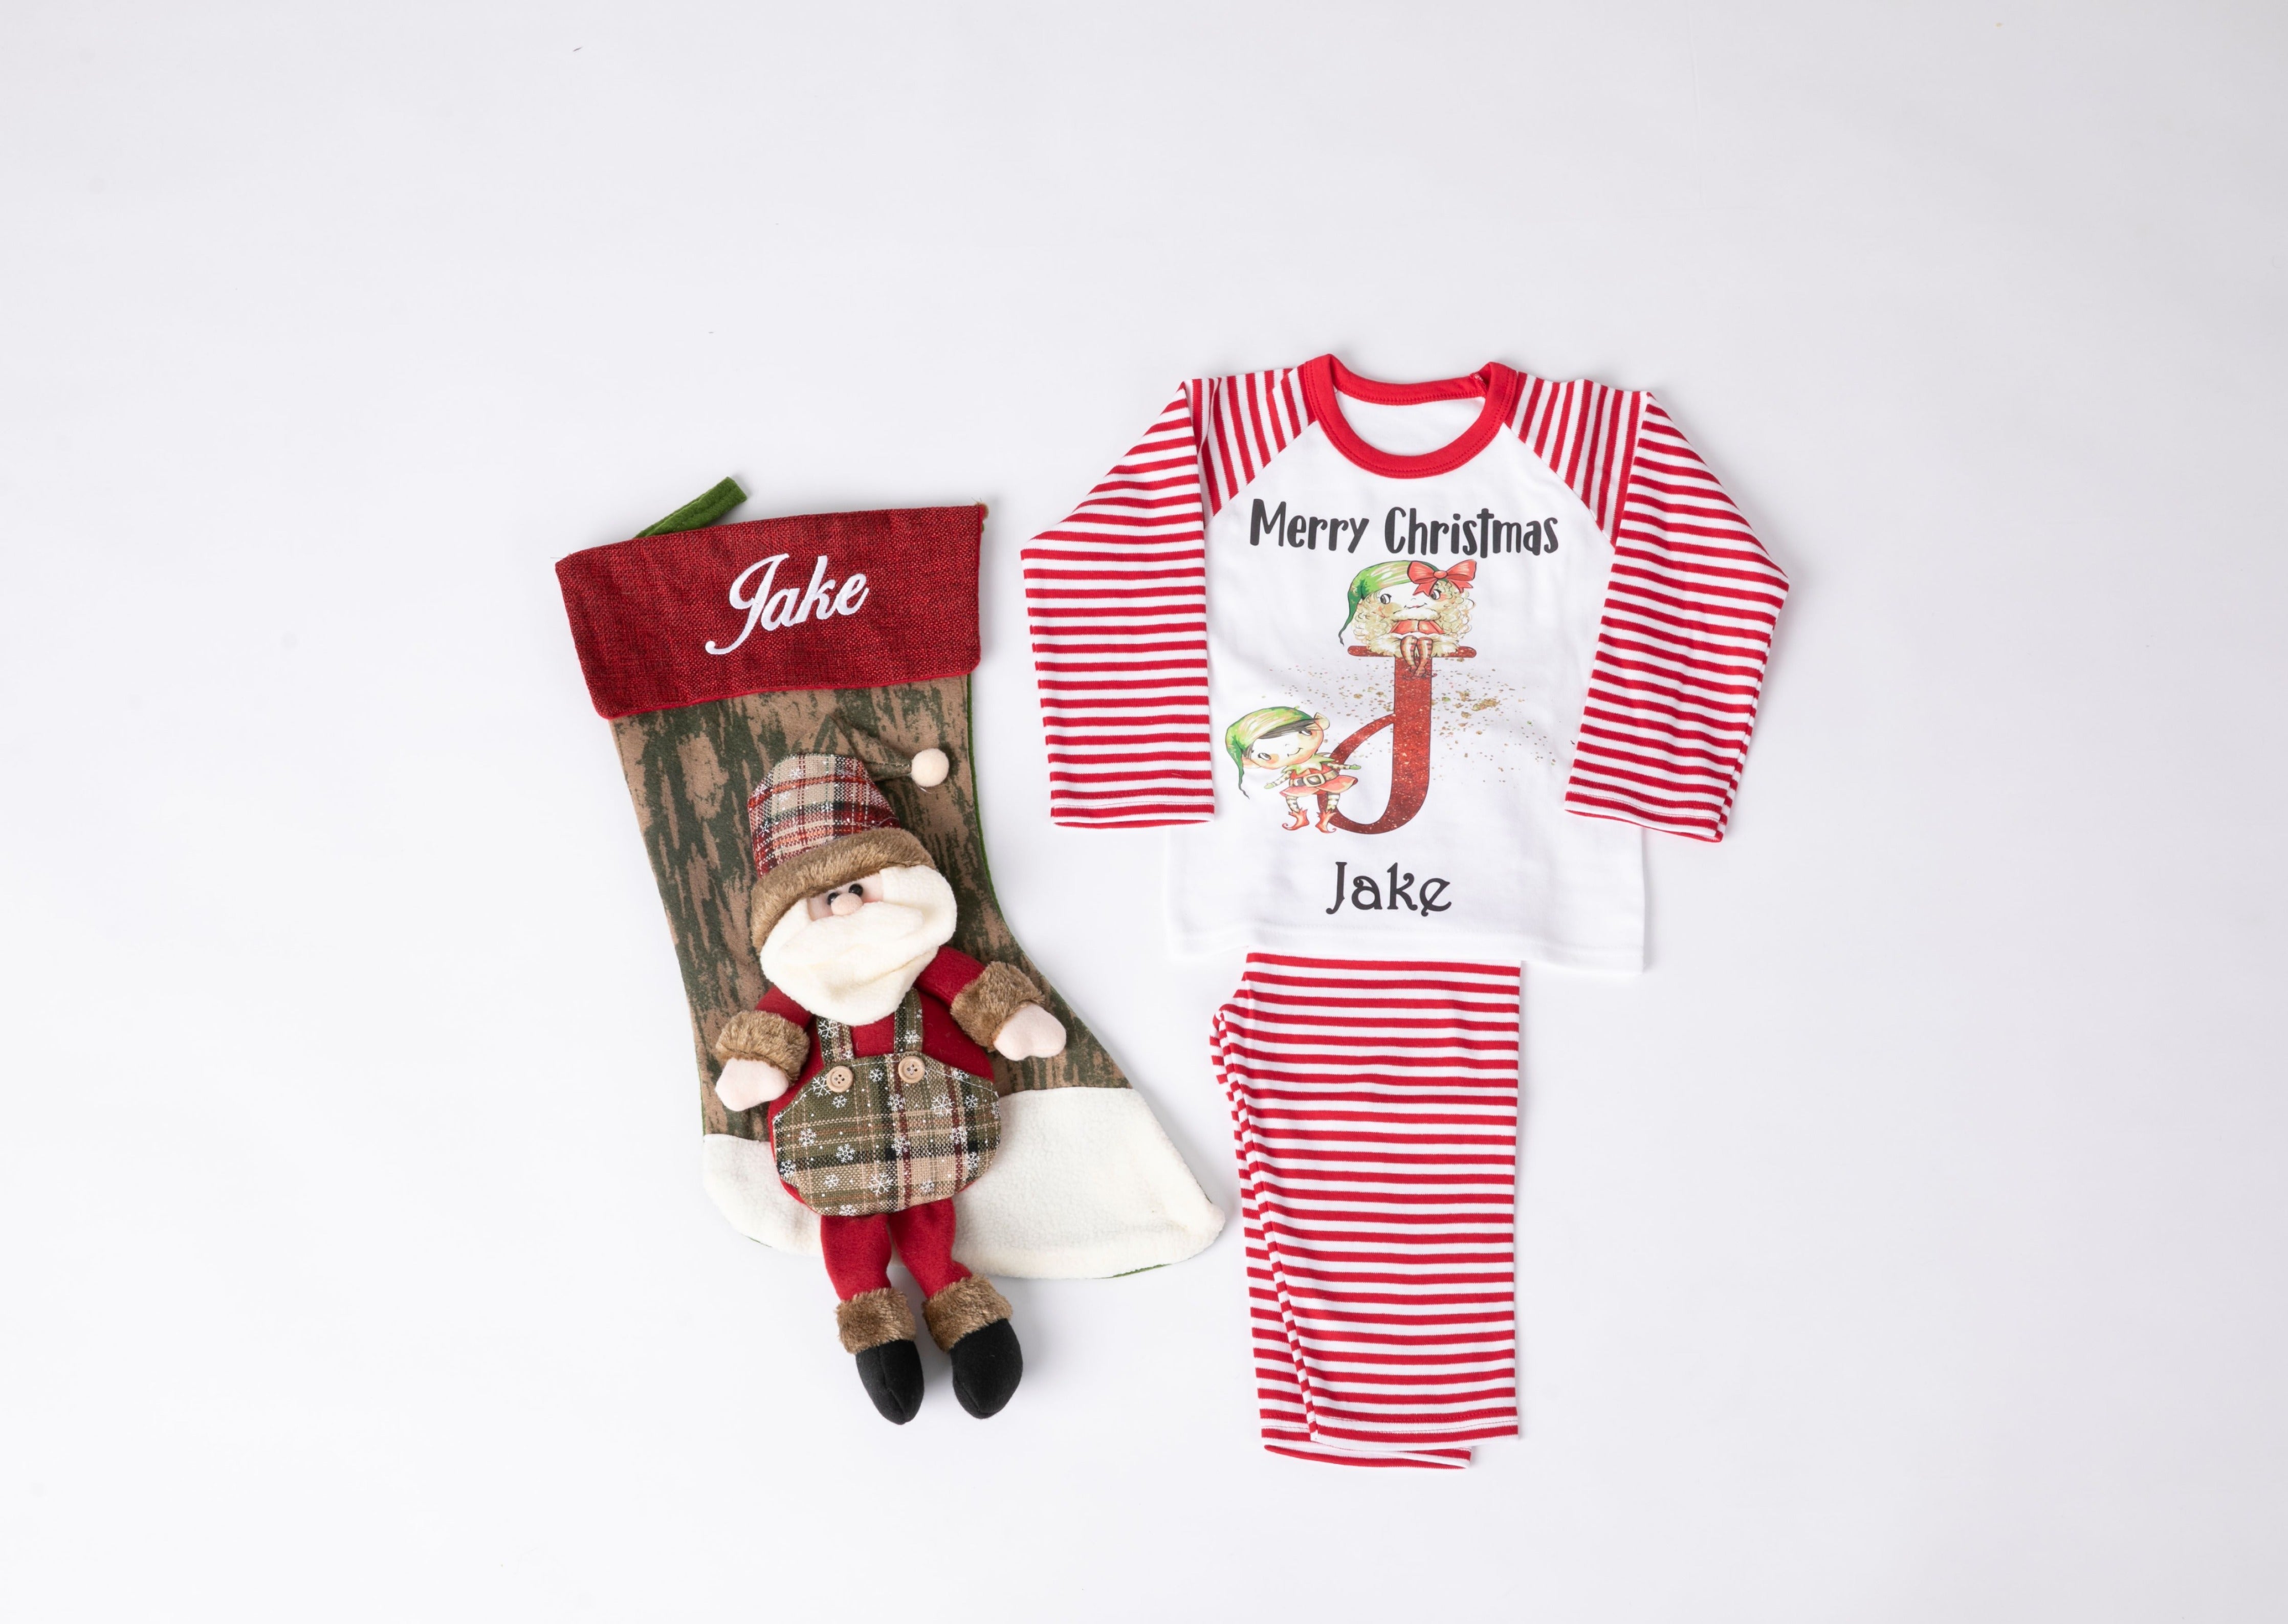 Red and White Christmas Pyjamas and Christmas stocking